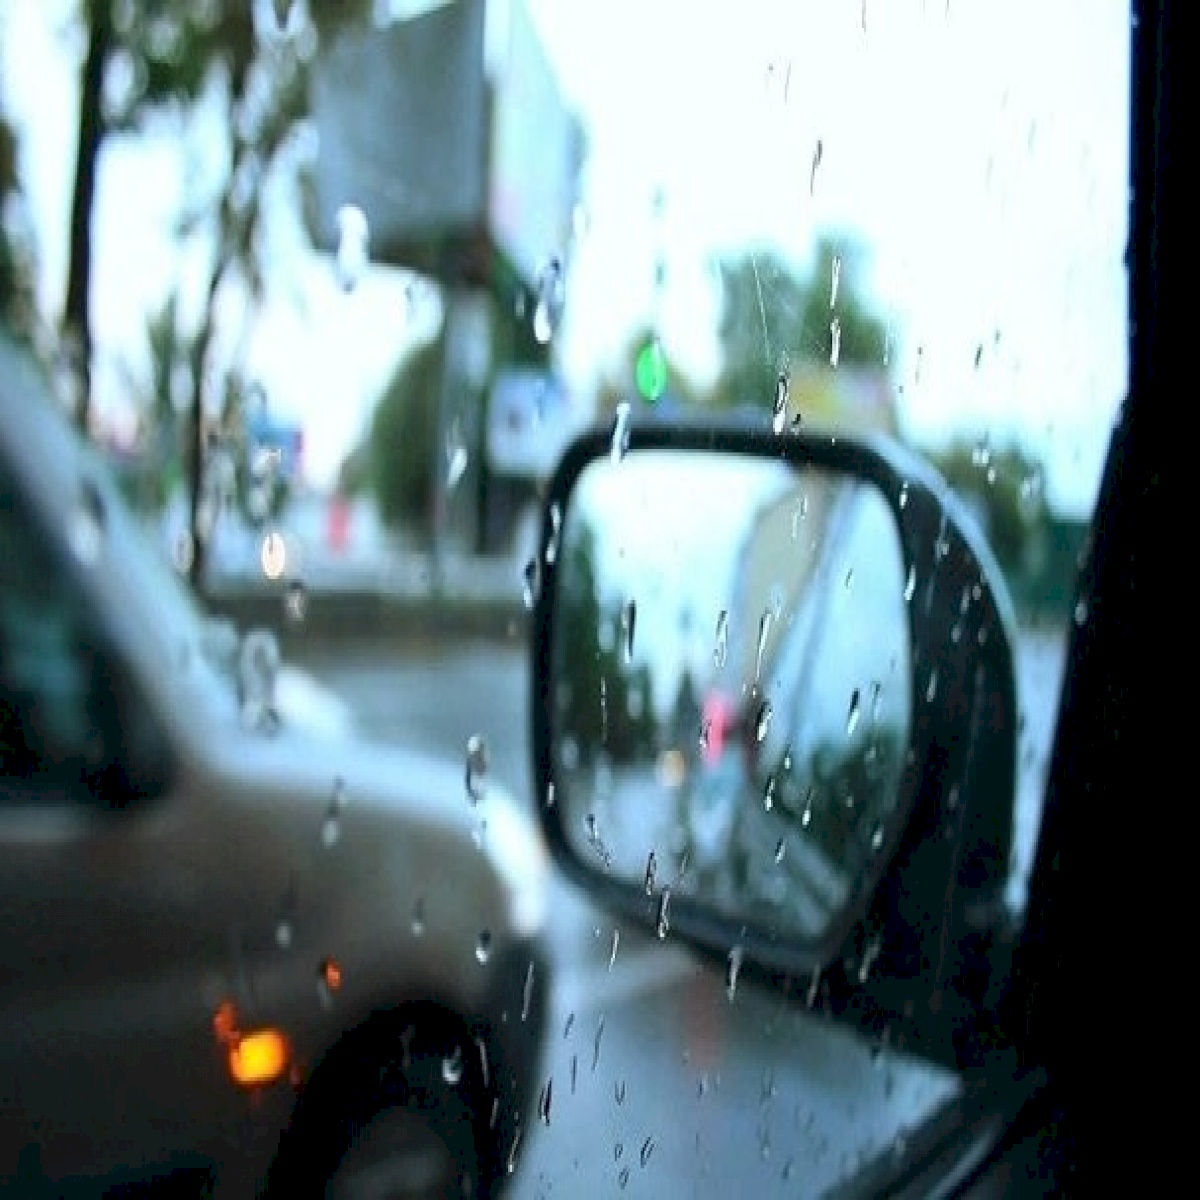 Lái xe trời mưa: Điều đầu tiên bạn sẽ nghĩ đến khi lái xe trên đường khi trời mưa chính là khó khăn và nguy hiểm. Tuy nhiên, với bức ảnh của chúng tôi, bạn sẽ cảm thấy hoàn toàn thỏa mãn bởi ánh sáng phản chiếu trên đường, cho bạn thấy rằng trời mưa cũng tuyệt vời như bất kỳ thời tiết nào khác. Hãy cùng chiêm ngưỡng không gian xung quanh một cách trọn vẹn và tận hưởng chuyến đi lái xe của mình!